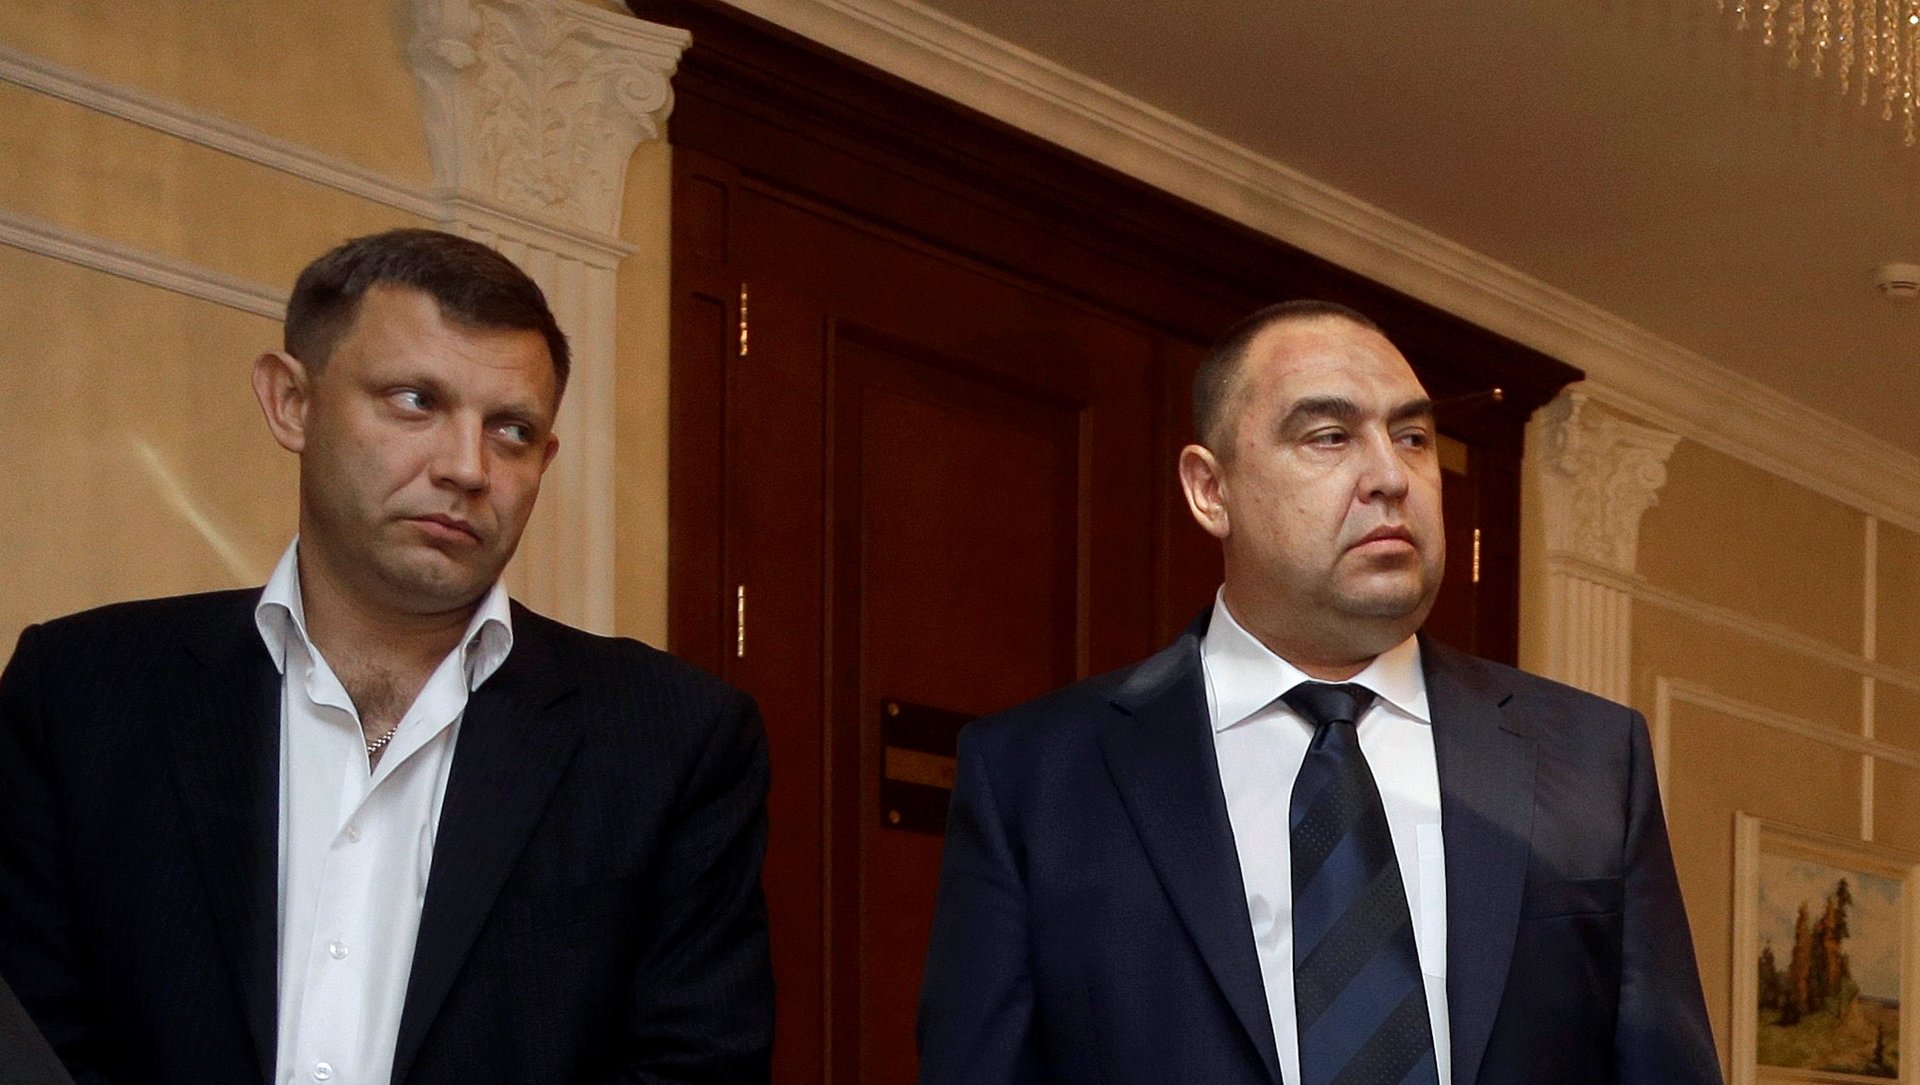 Грицак пообещал "зачистить" лидеров Донецкой и Луганской народных республик